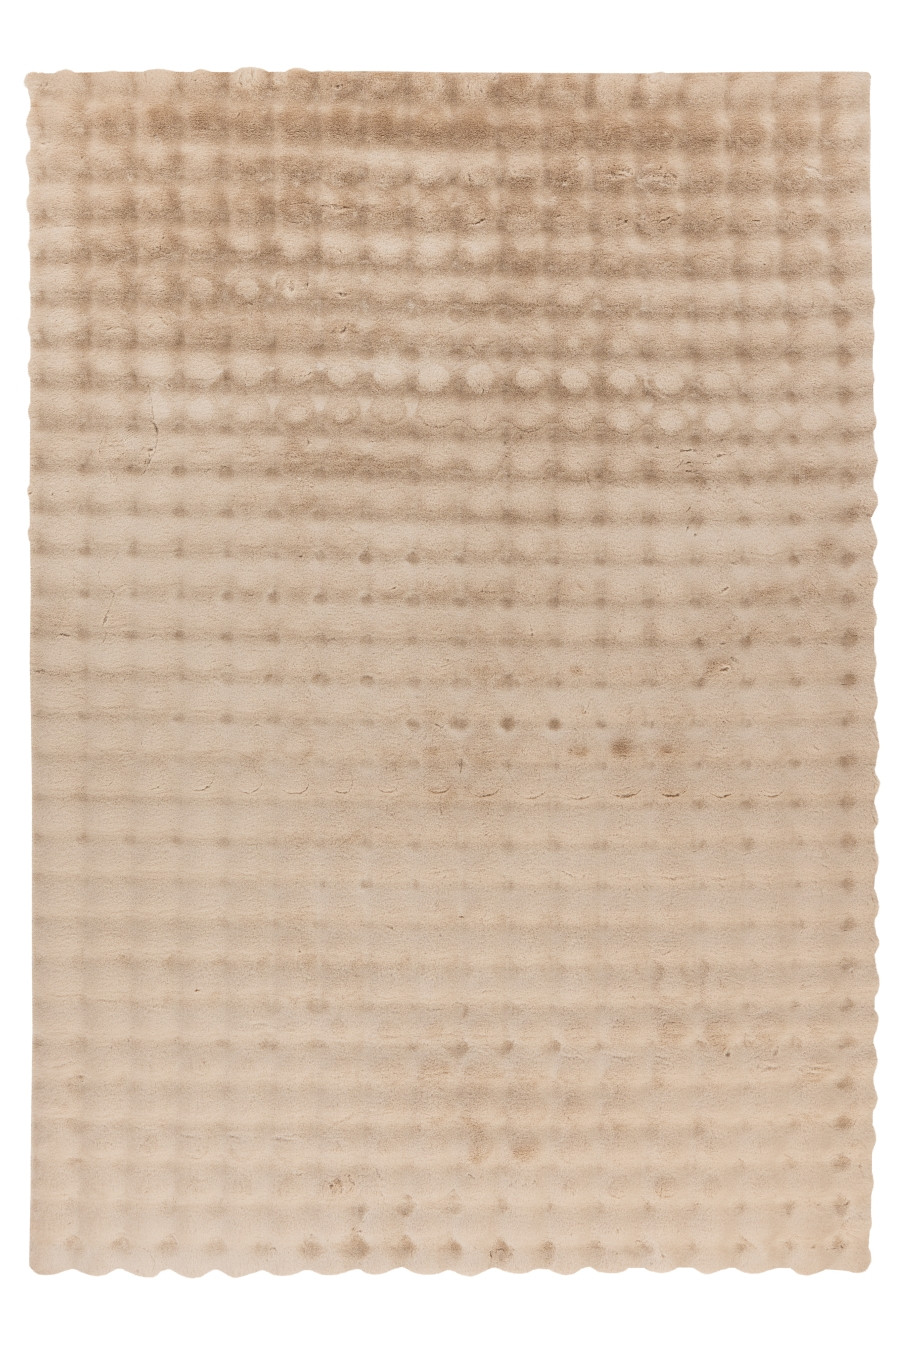 Obsession koberce Kusový koberec My Aspen 485 beige Rozměry koberců: 80x80 (průměr) kruh